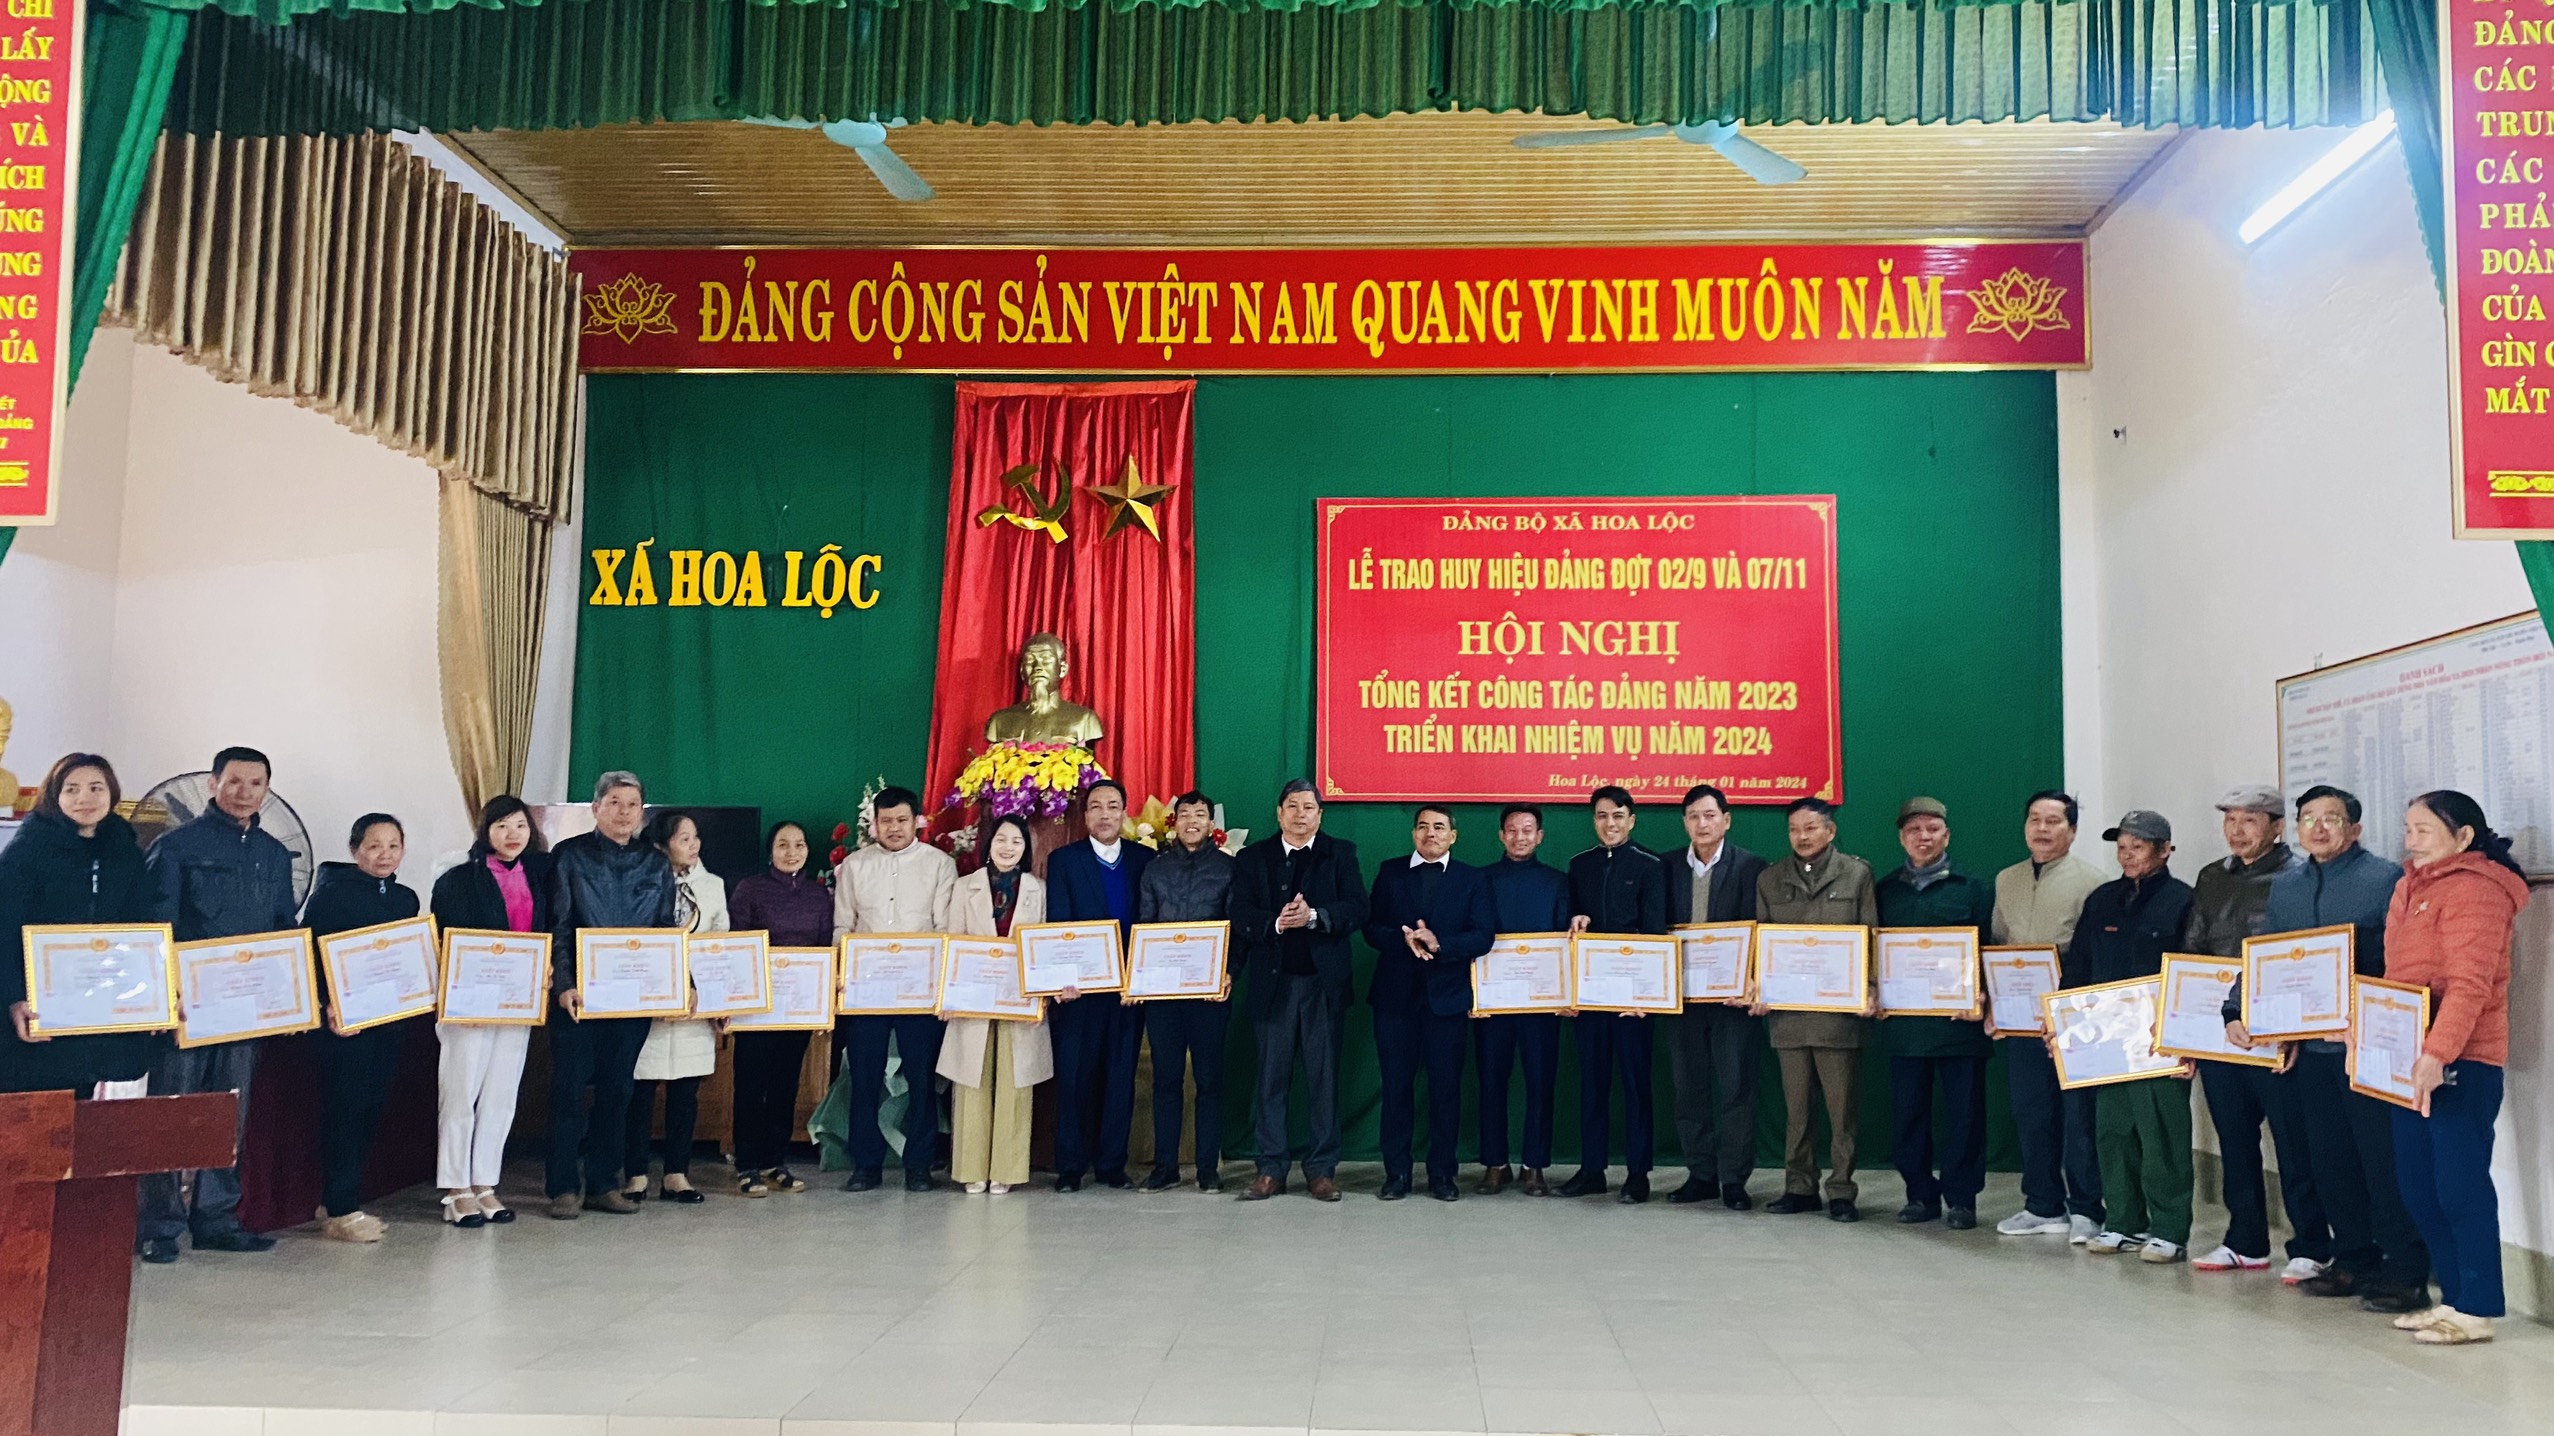 Đảng bộ xã Hoa Lộc tổ Hội nghị tổng kết công tác Đảng năm 2023. Triển khai nhiệm vụ năm 2024.